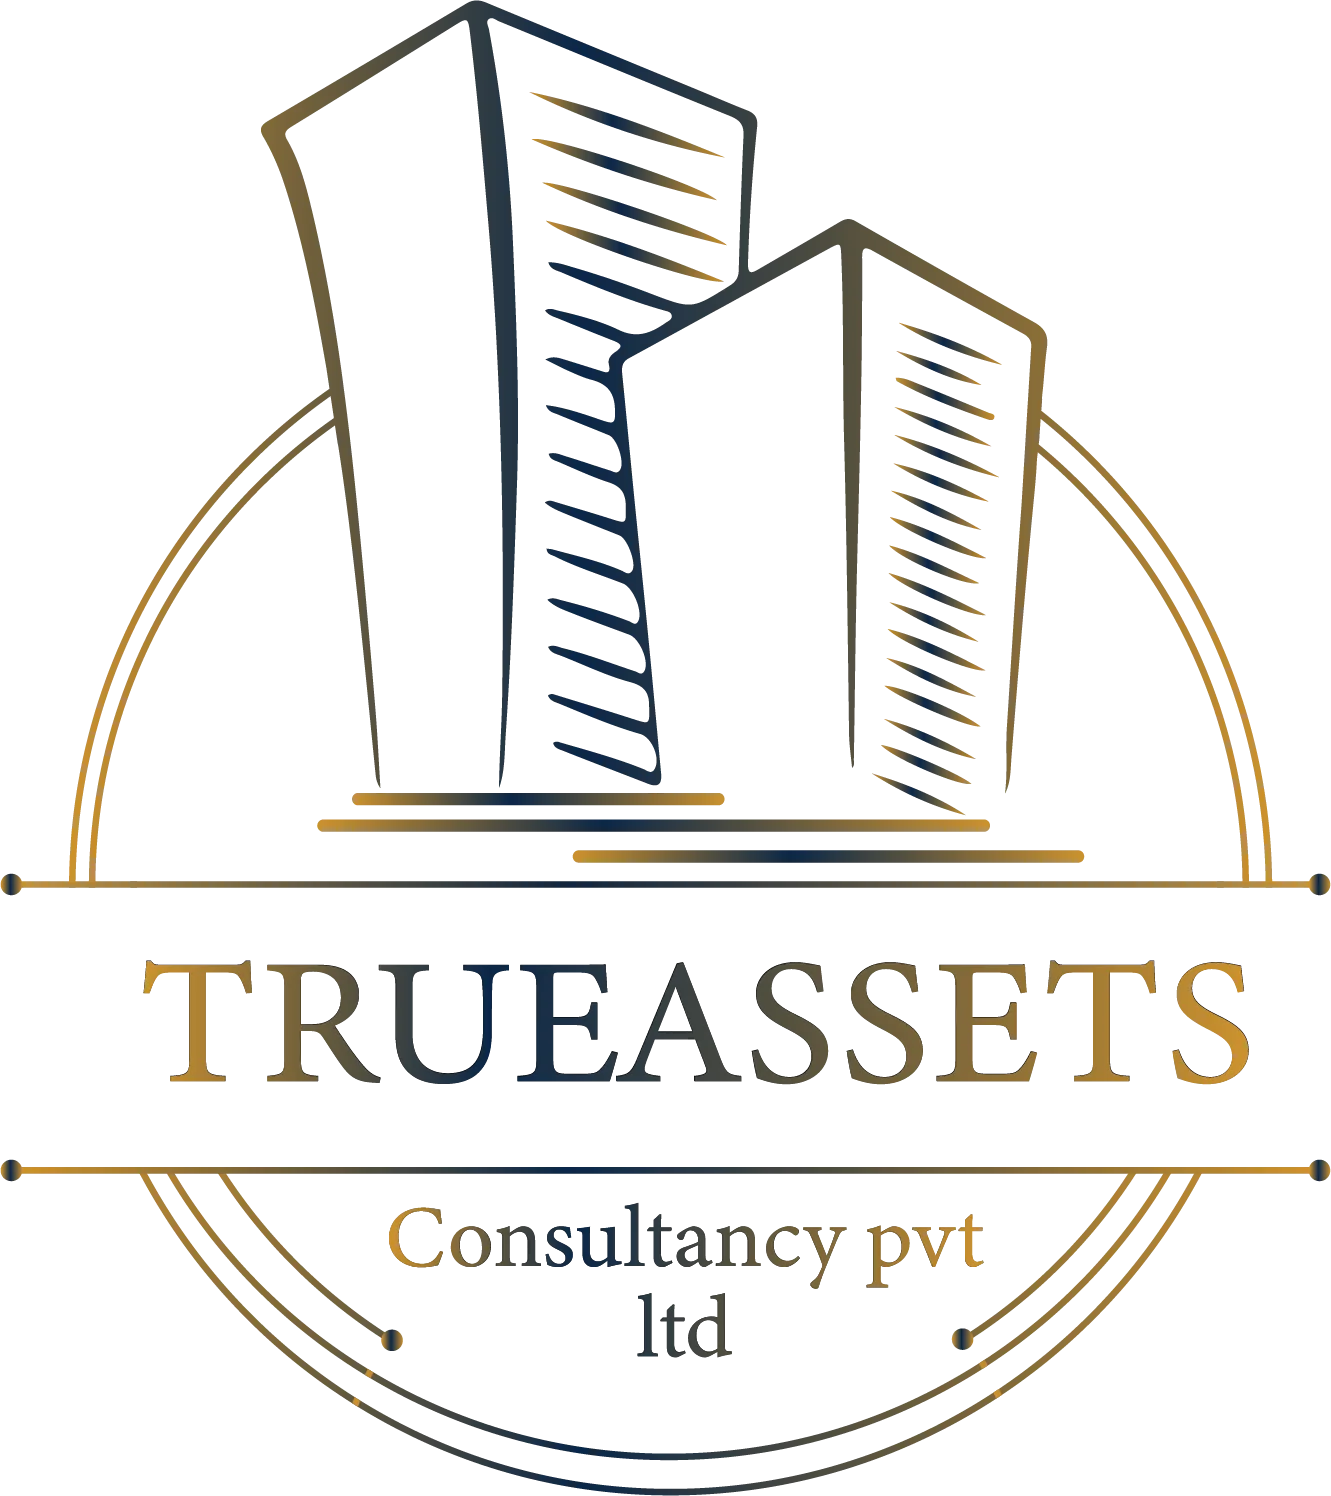 TrueAssets Consultancy